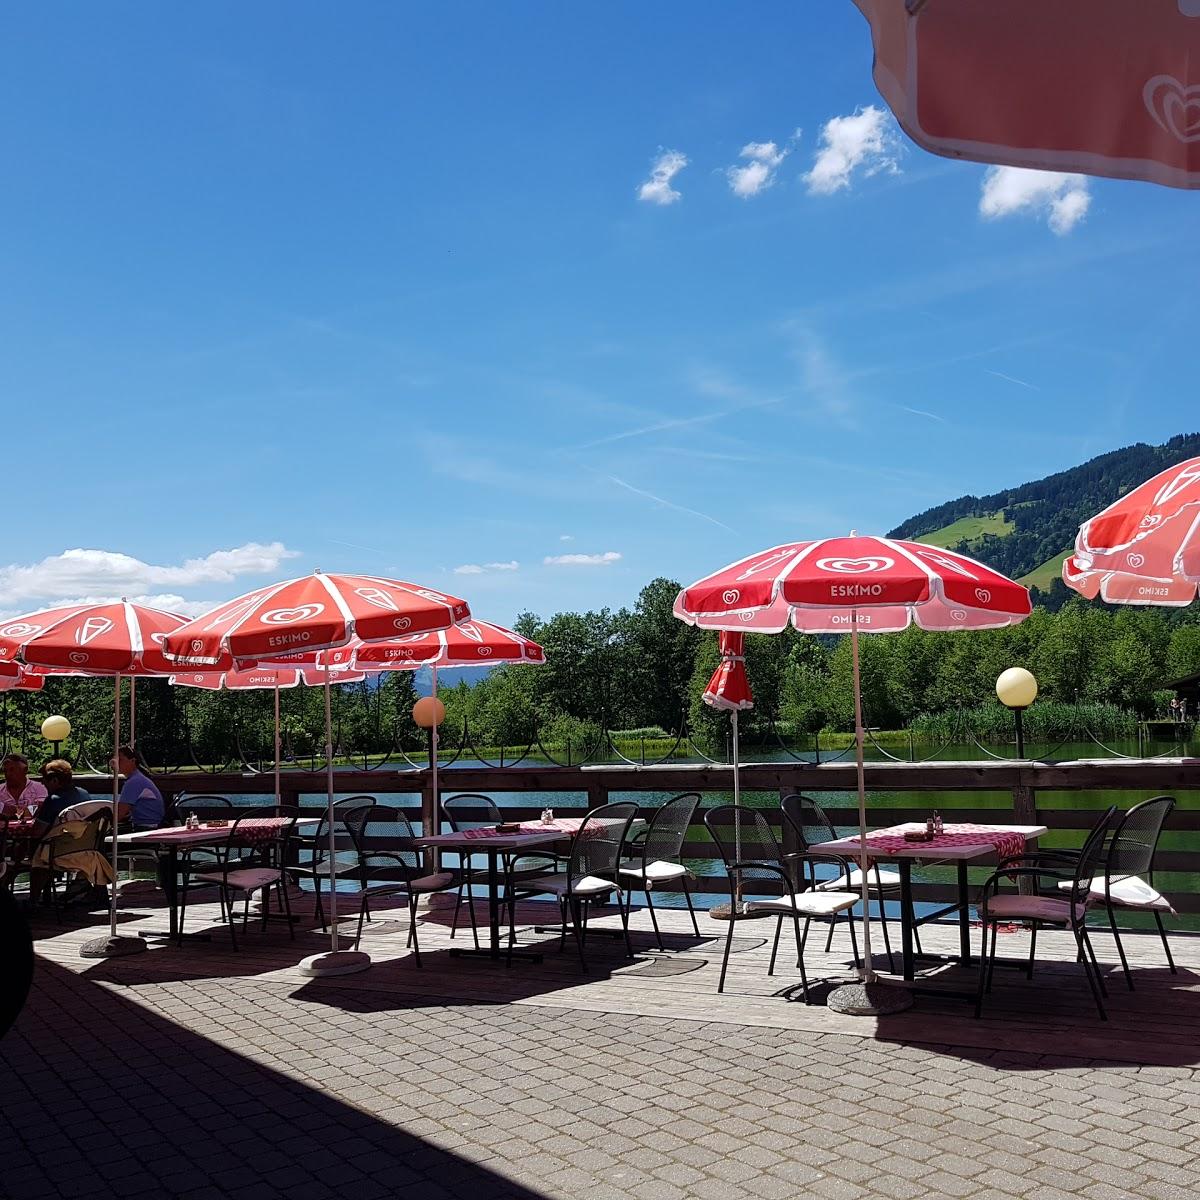 Restaurant "Restaurant Fischerstadl" in Brixen im Thale